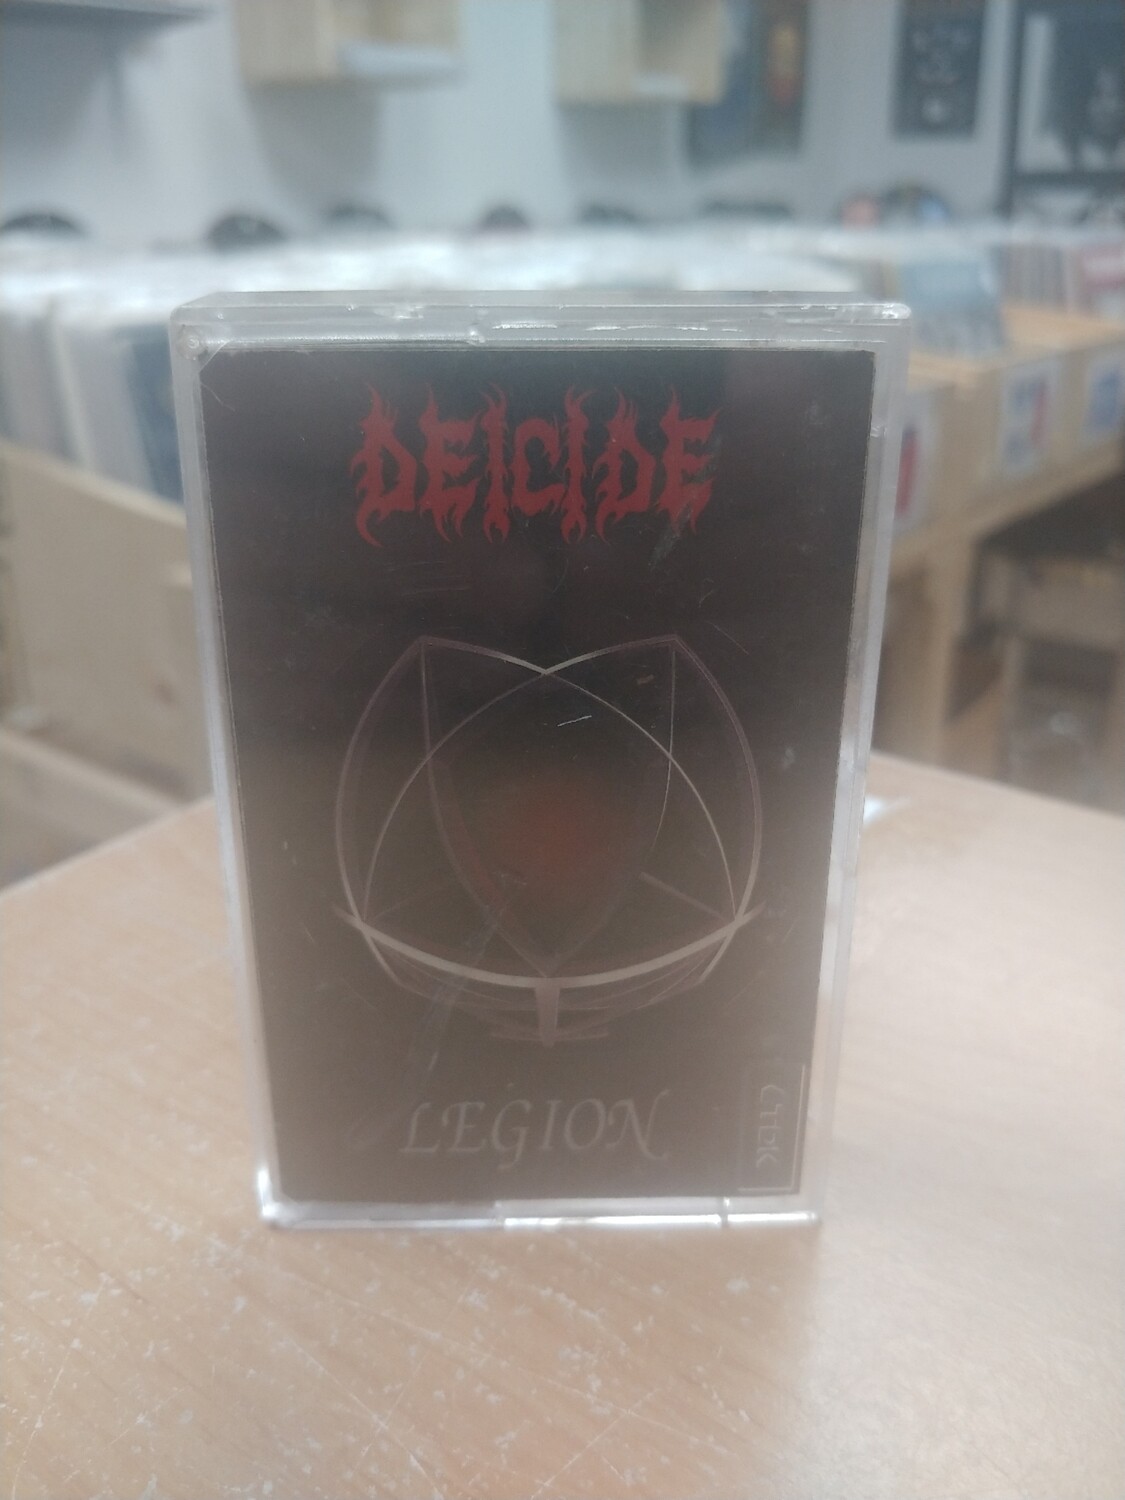 Decide - Legion (CASSETTE)